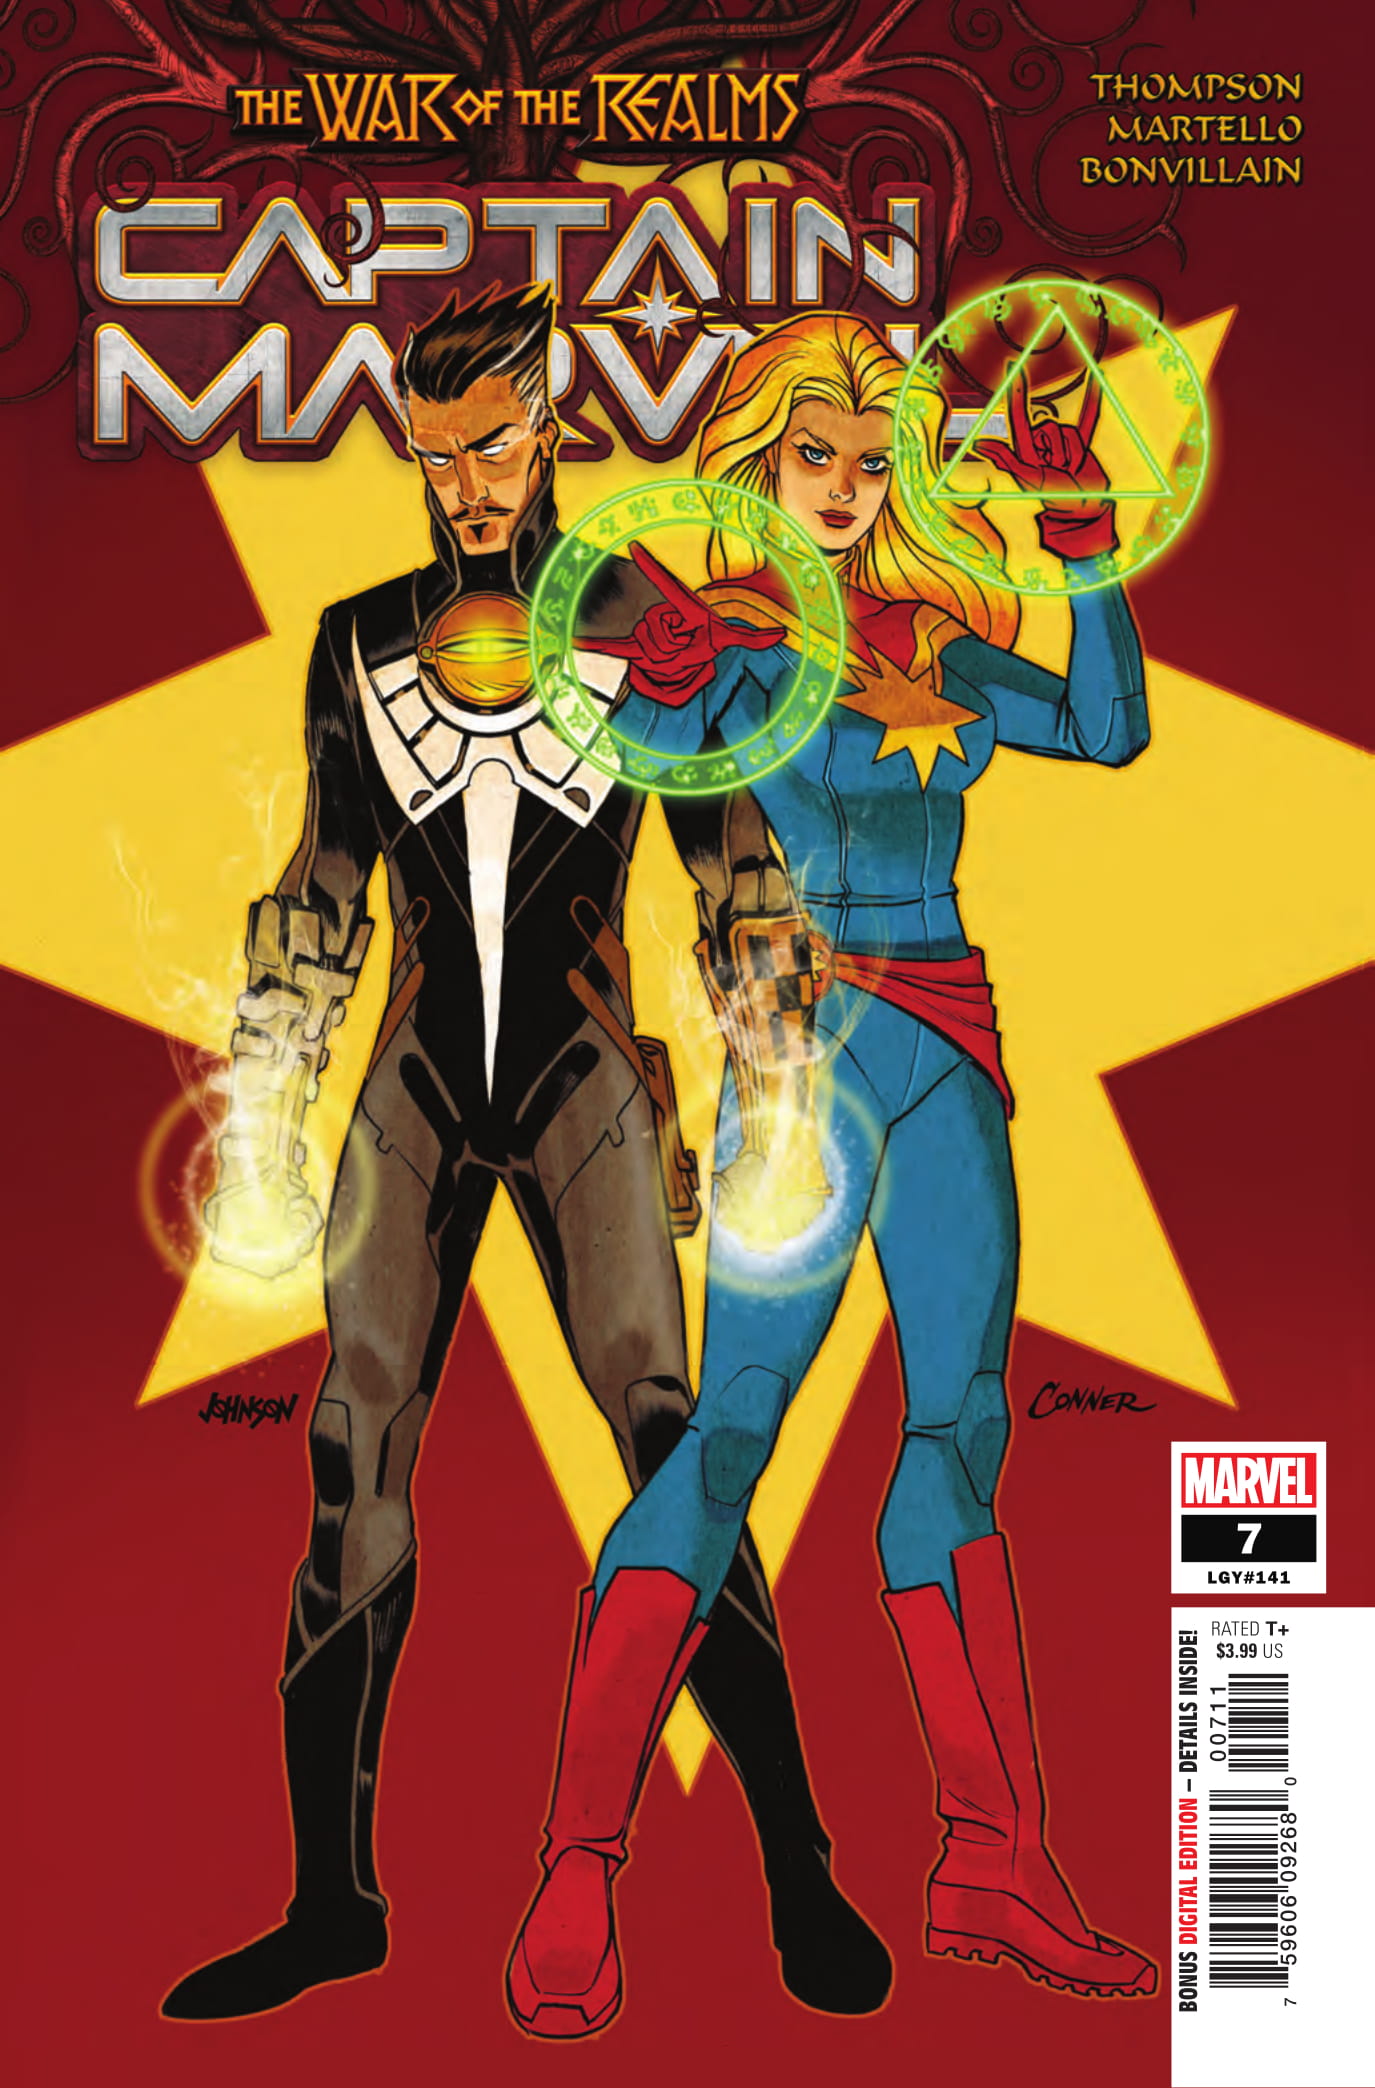 Captain Marvel #7 cover art